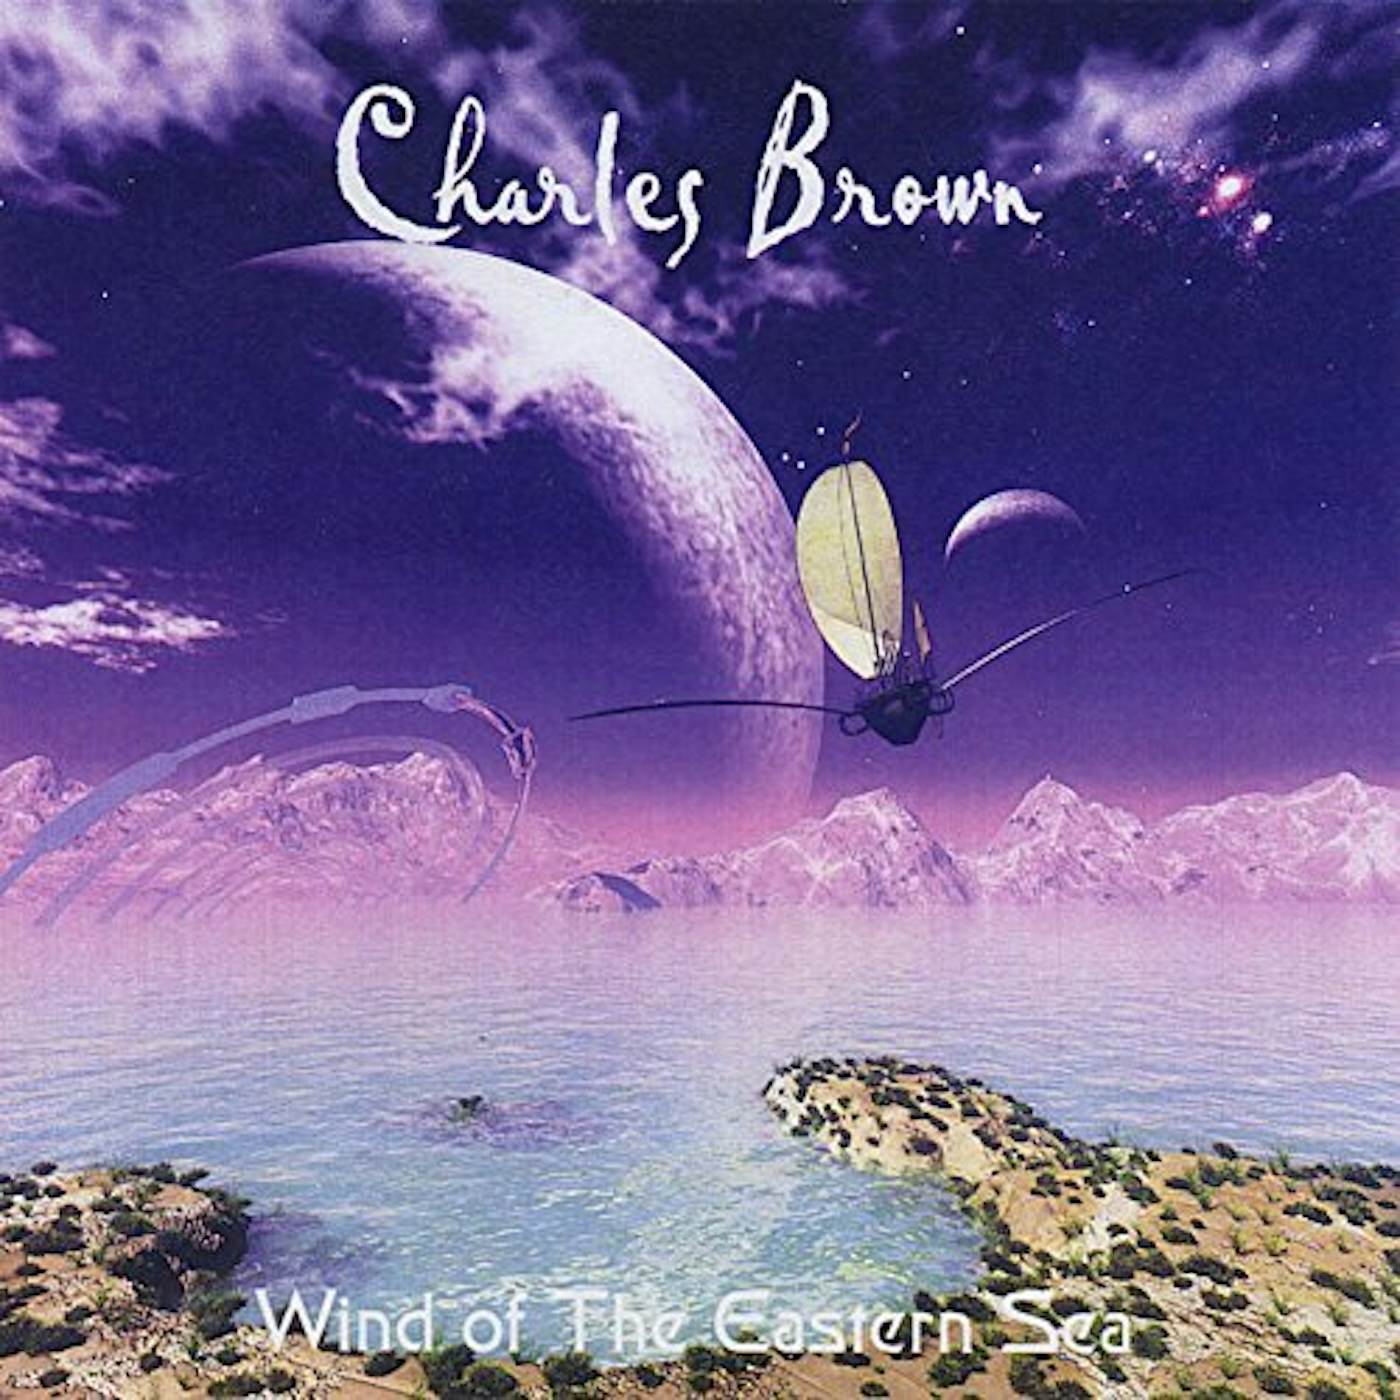 Charles Brown WIND OF THE EASTERN SEA CD